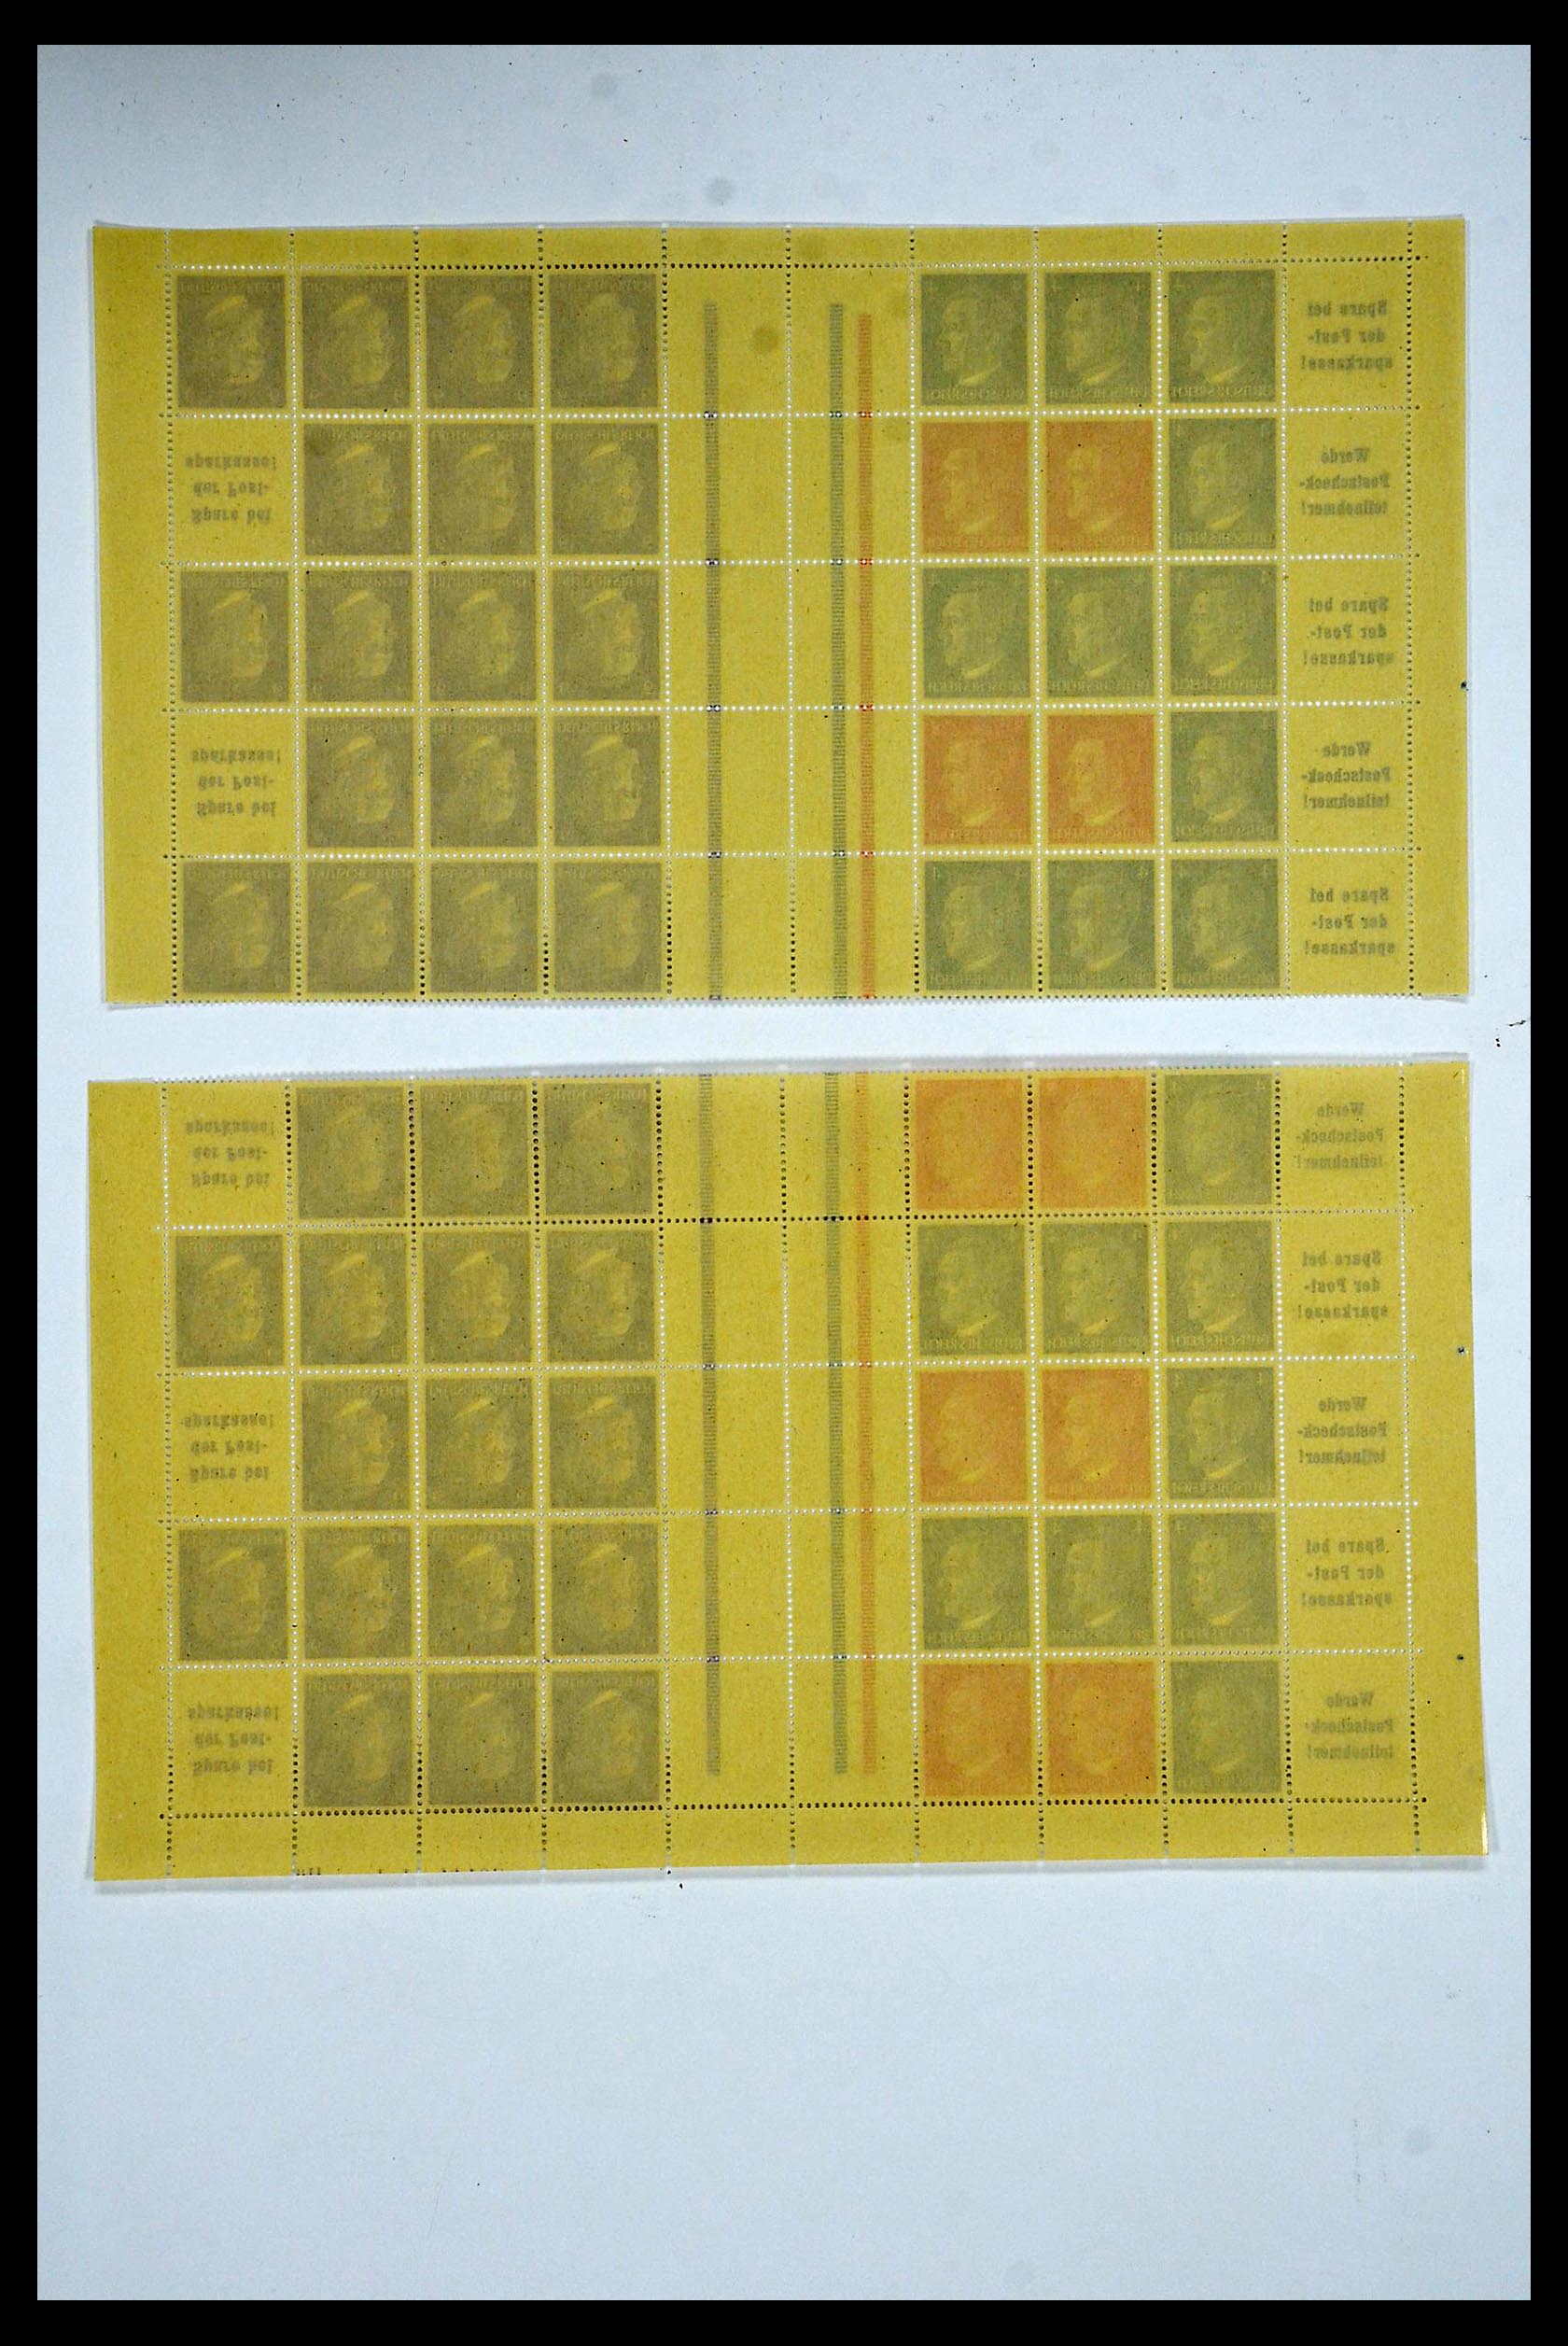 34164 076 - Stamp collection 34164 German Reich Markenheftchenbogen 1933-1942.